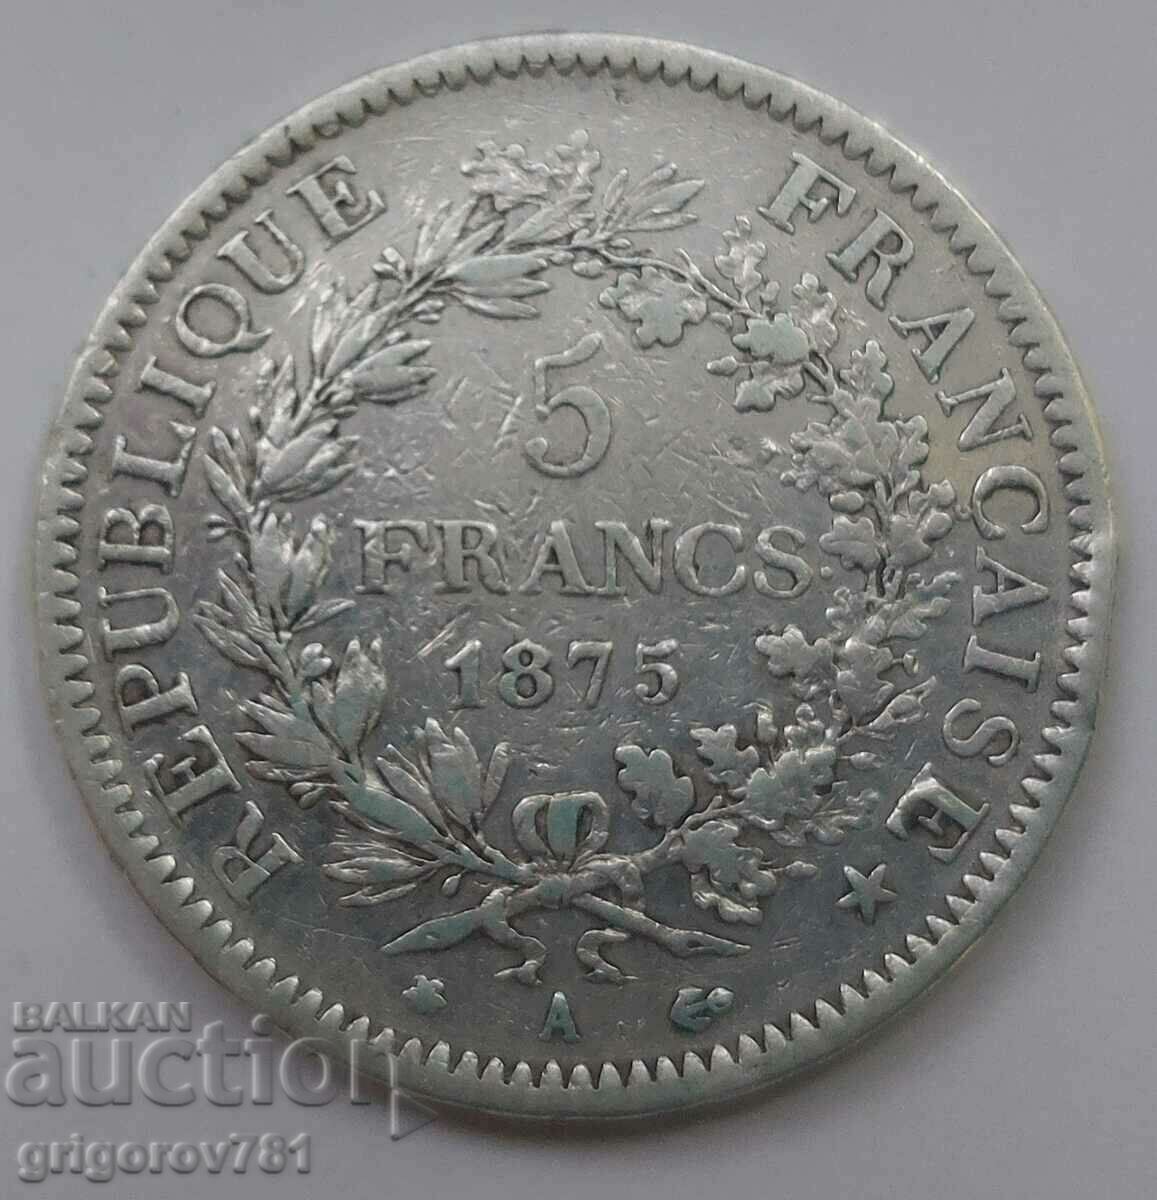 5 Franci Argint Franta 1876 A - Moneda de argint #91